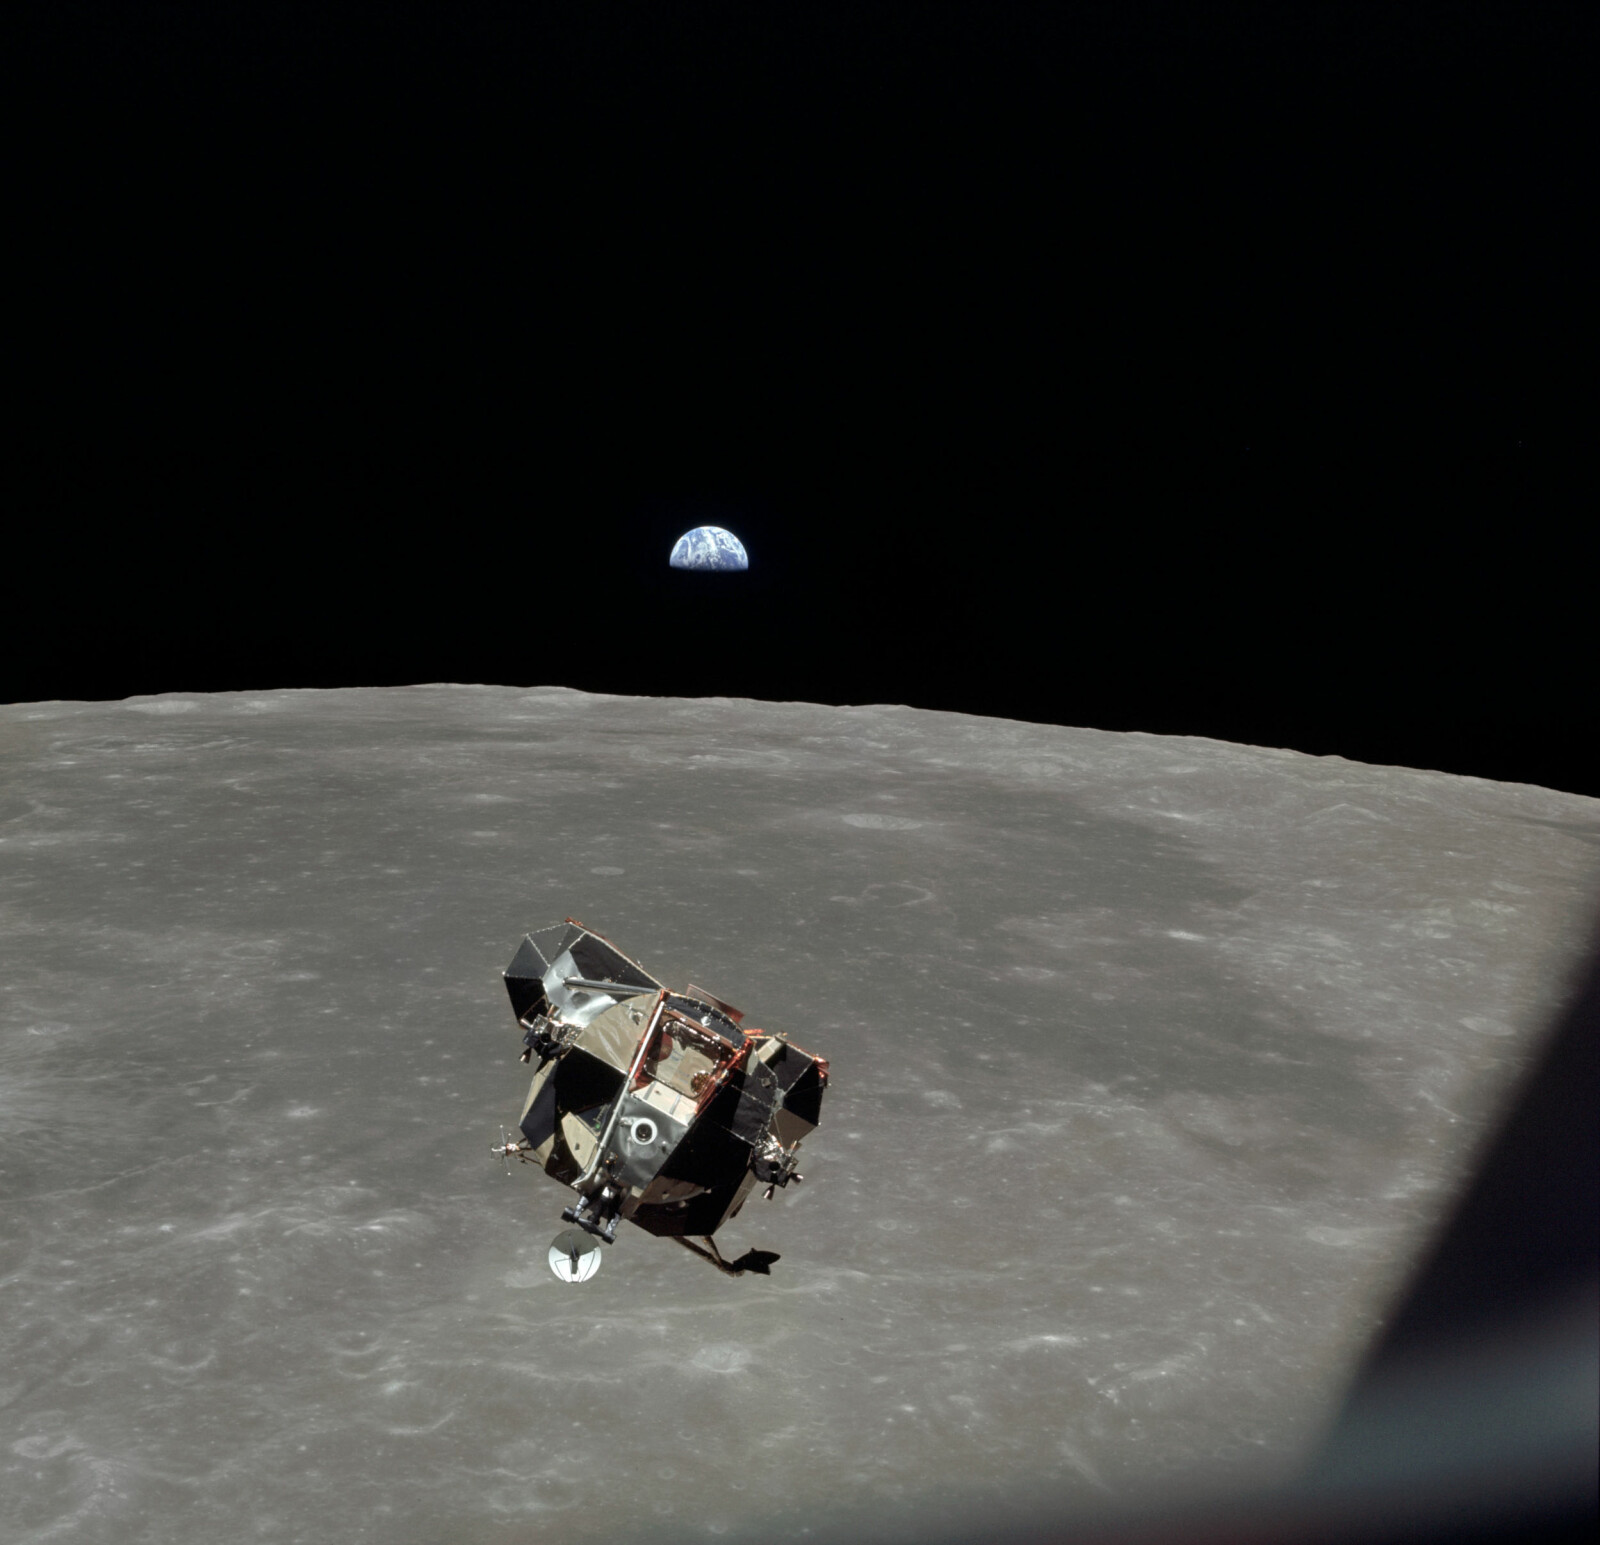 <b>LANGT HJEMMEFRA:</b> Månen, Jorden og landingsfartøyet fotografert av tredjemann i moderfartøyet, Michael Collins, mens det var på vei opp igjen fra Månens overflate. Herfra var det rundt 400 000 kilometer hjem til Jorden.